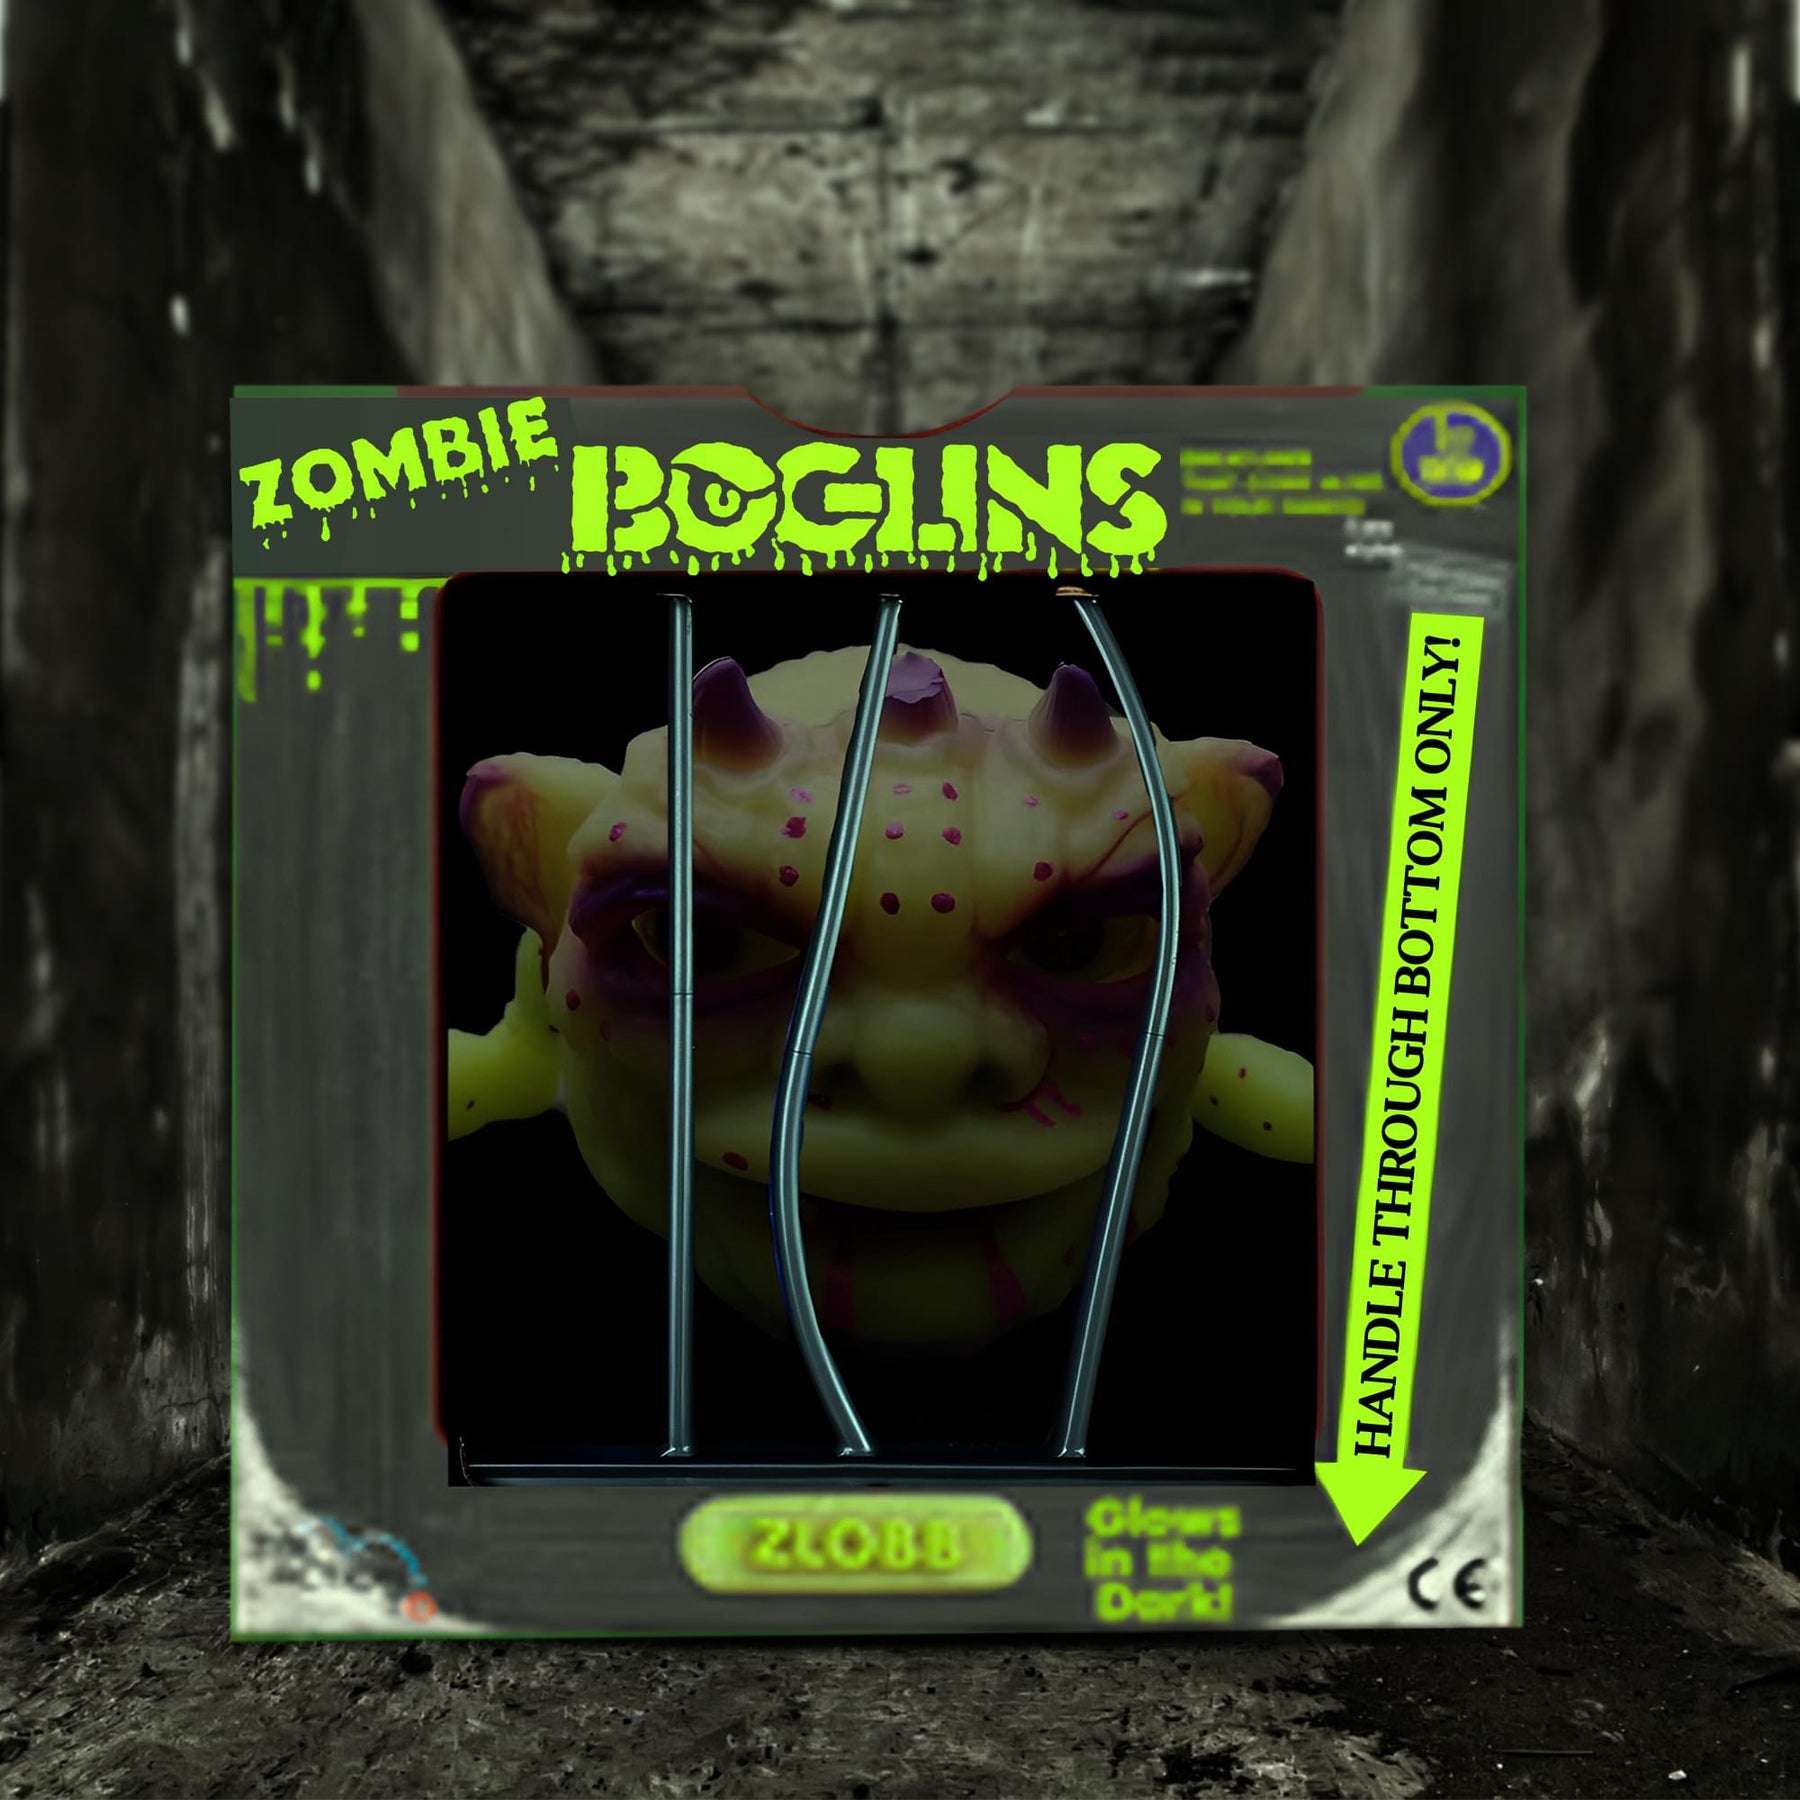 Boglins Foam Monster Puppet | Zlobb Zombie Boglin